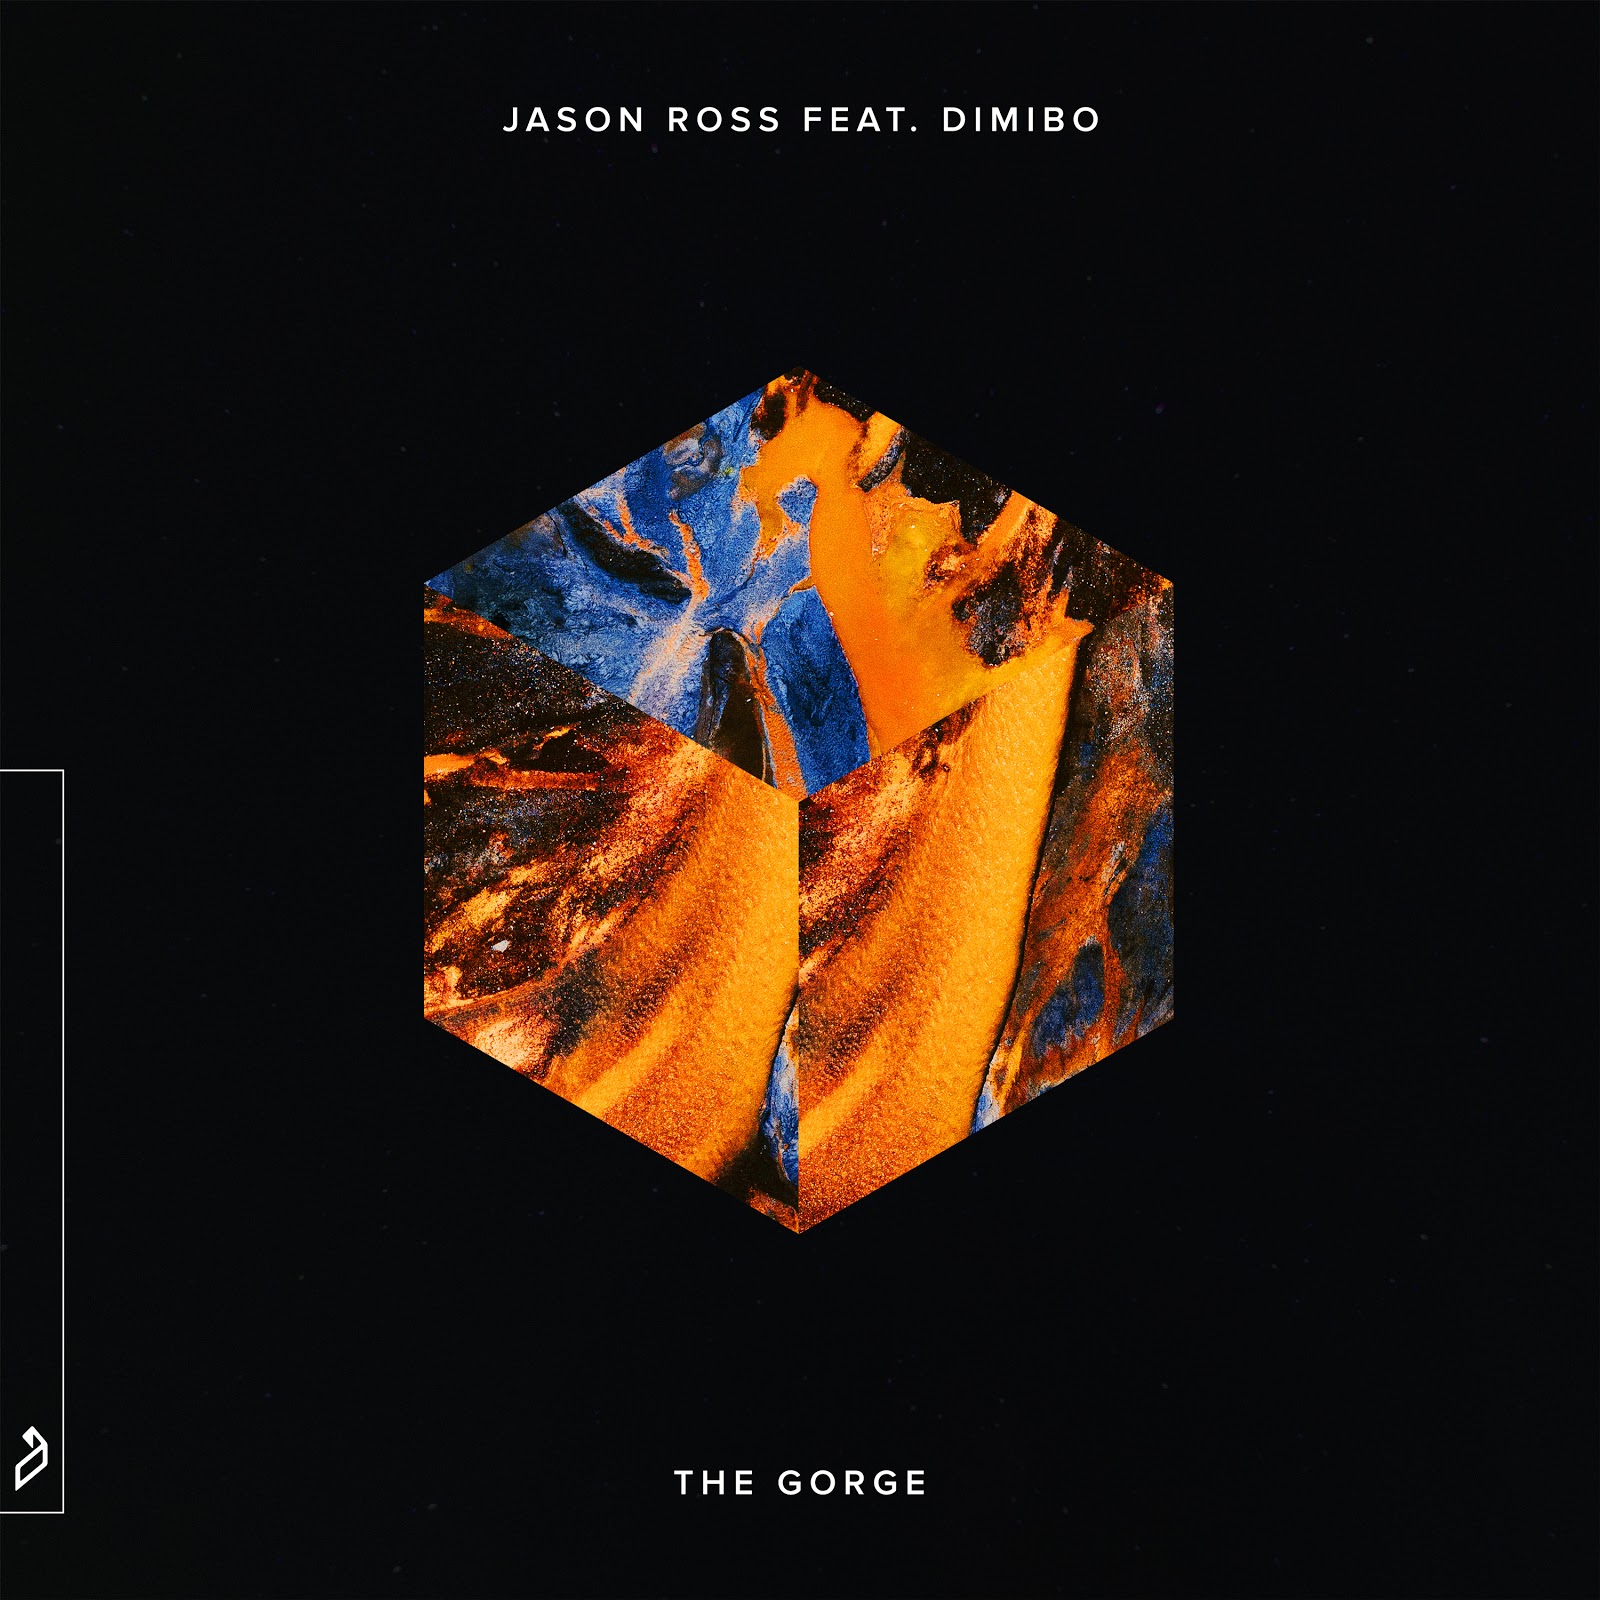 Jason Ross & Dimibo - The Gorge [Trance]